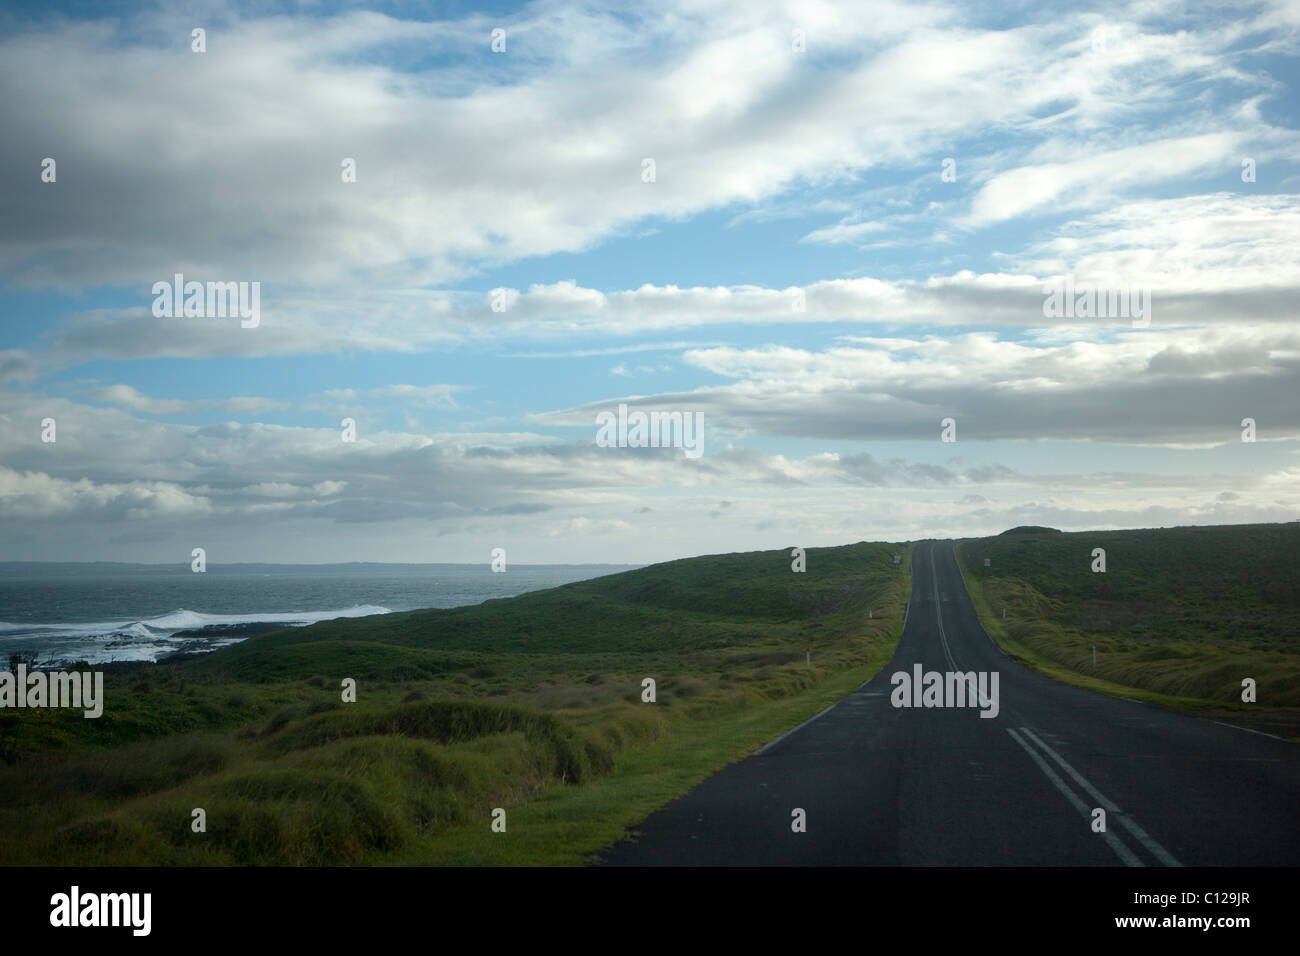 Open road along sea-side. Symbolic of freedom, escape, solitude etc. Stock Photo